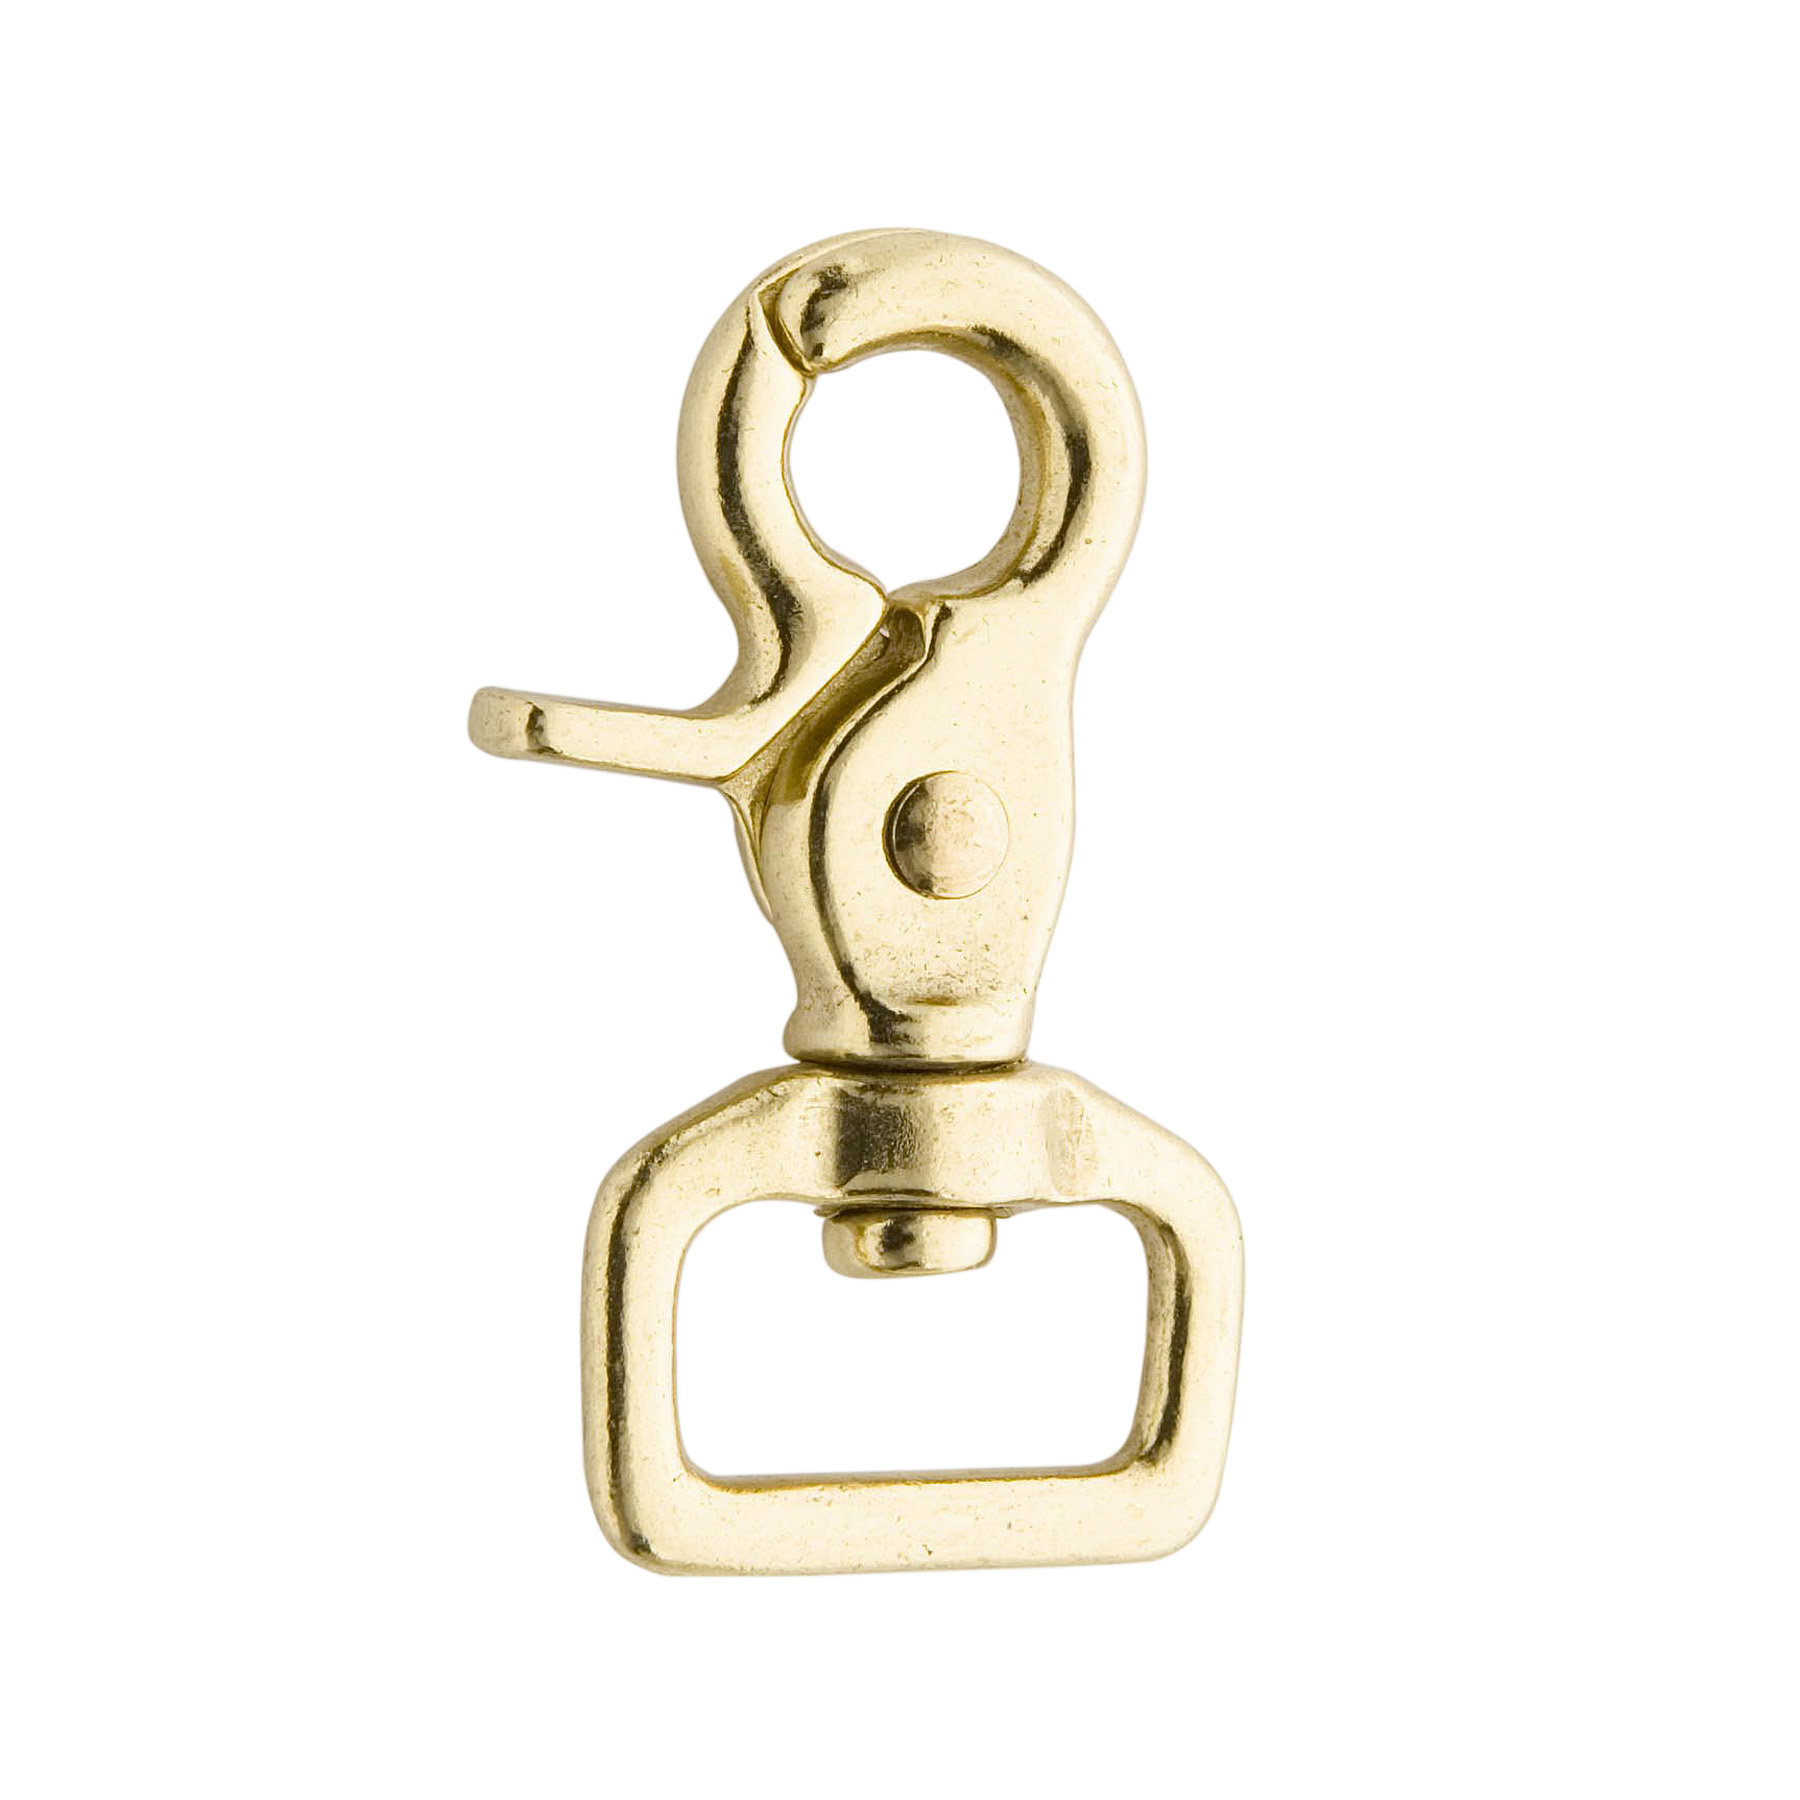 1 in Solid Brass - Industrial Snap Hooks, Trigger Snaps - Granat